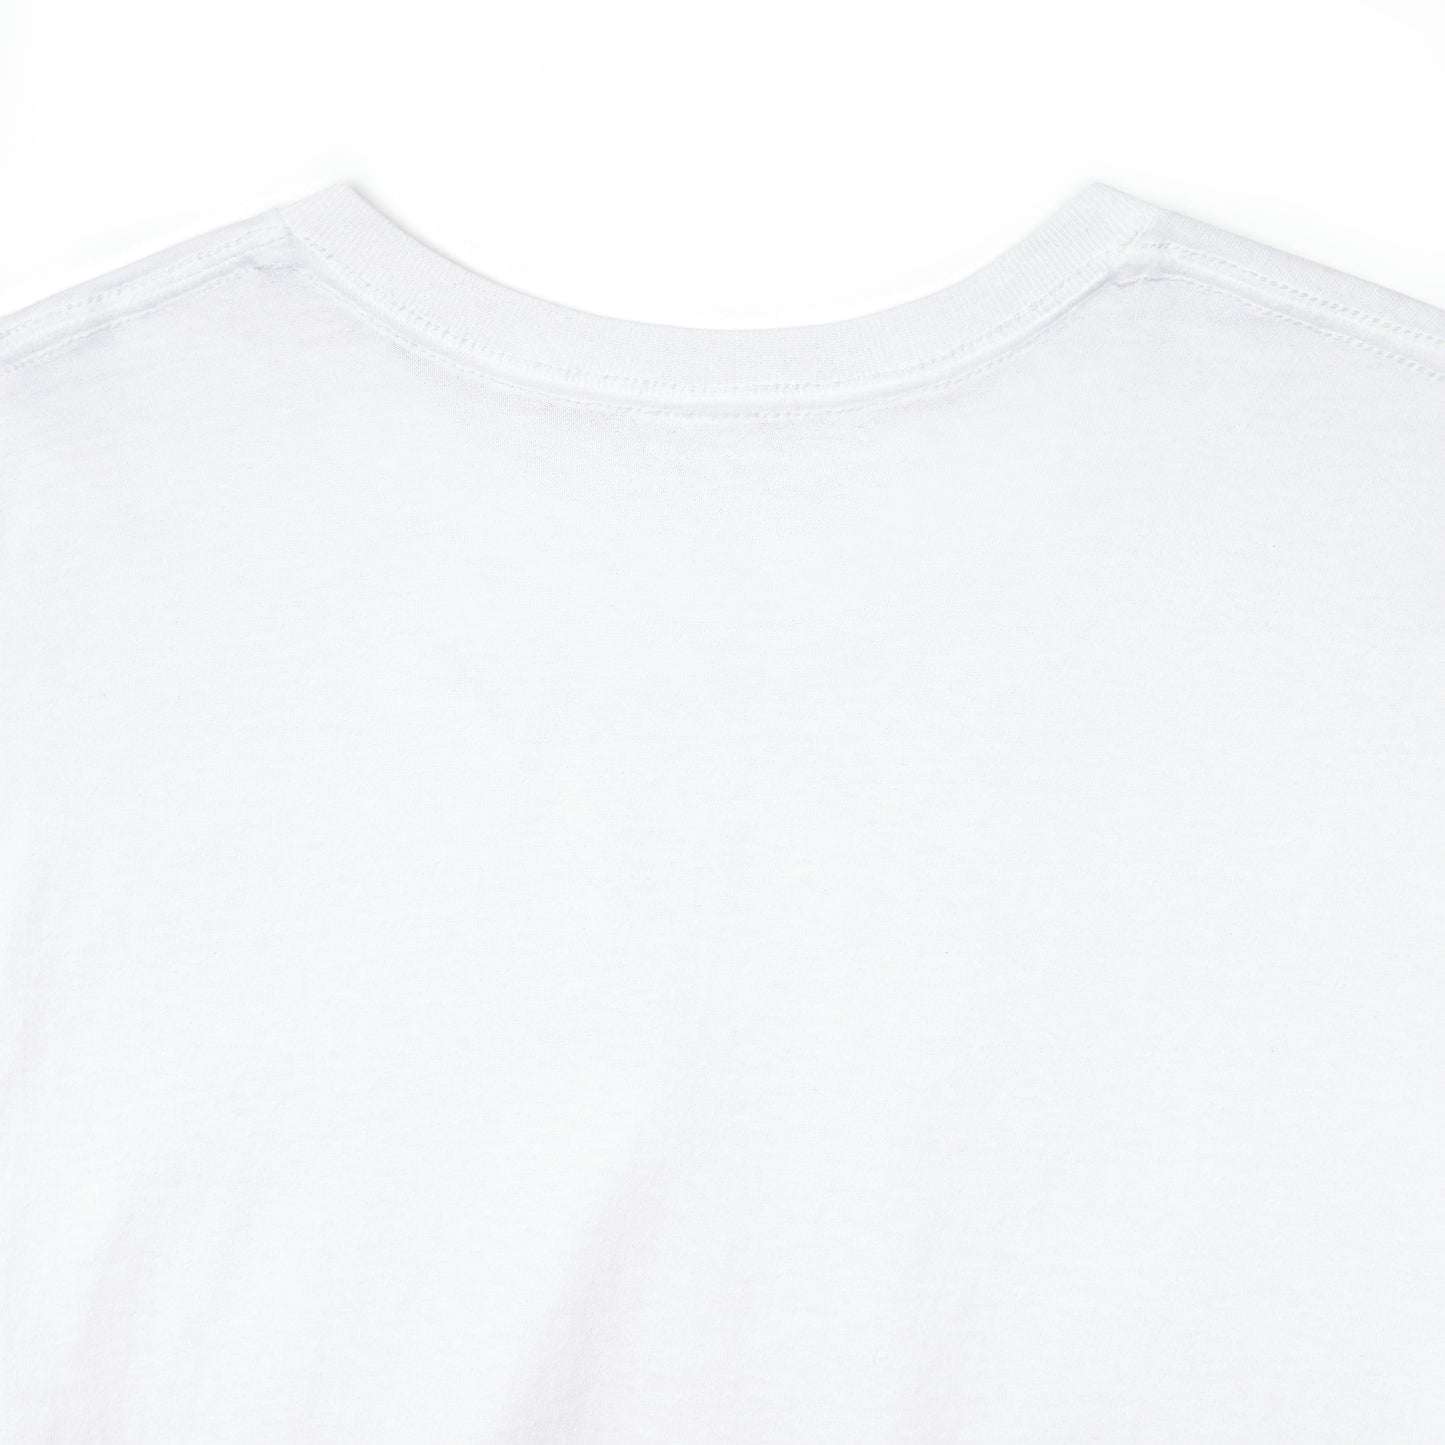 Peepomon T-shirt. - Unisex Heavy Cotton Tee (USA)